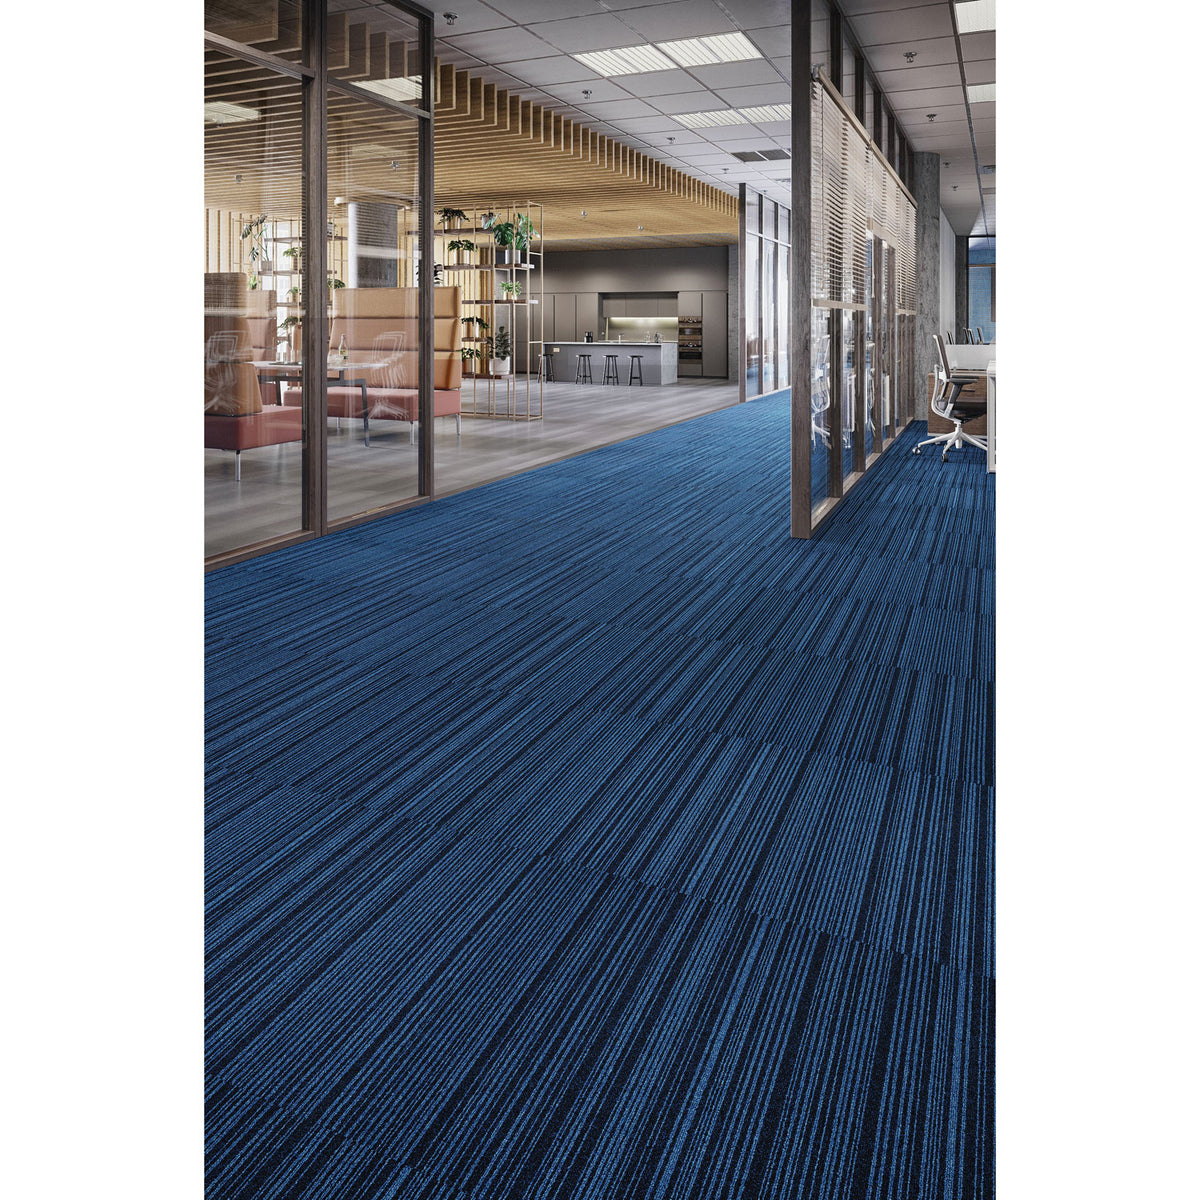 Mohawk Group - Art Intervention Draft Point Carpet Tile Room Scene